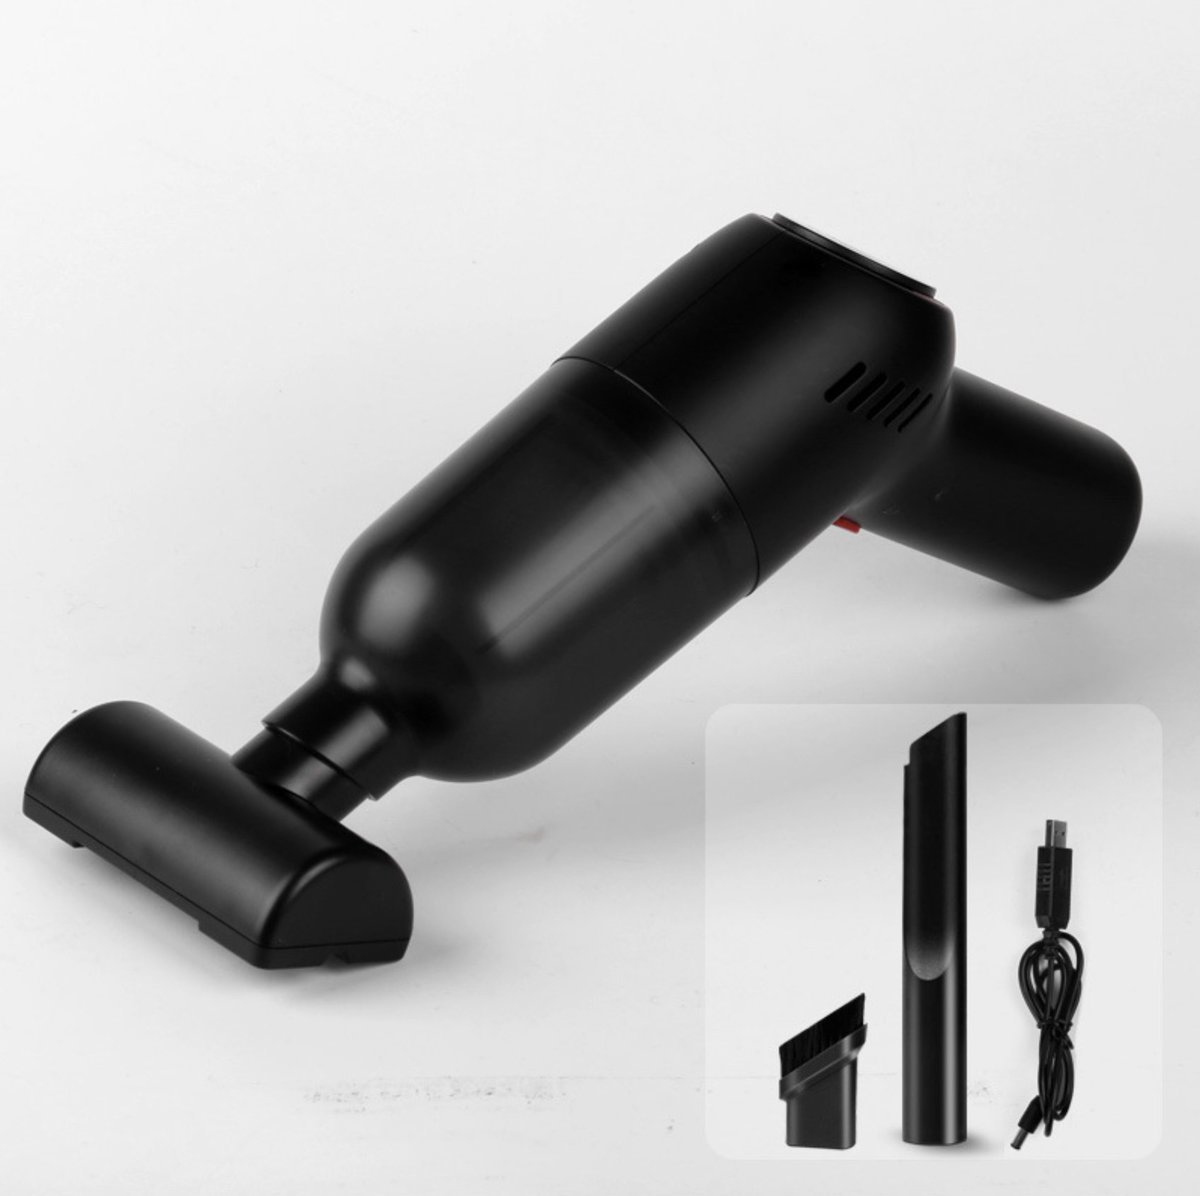 (黑色) 便攜式無線塵蟎吸塵機  無線吸塵器 充電大功率 車用吸塵器 強力吸塵器USB 家用小型迷你吸塵器 8000pa 超大吸力吸塵器 手提無線吸塵器 吸塵機 